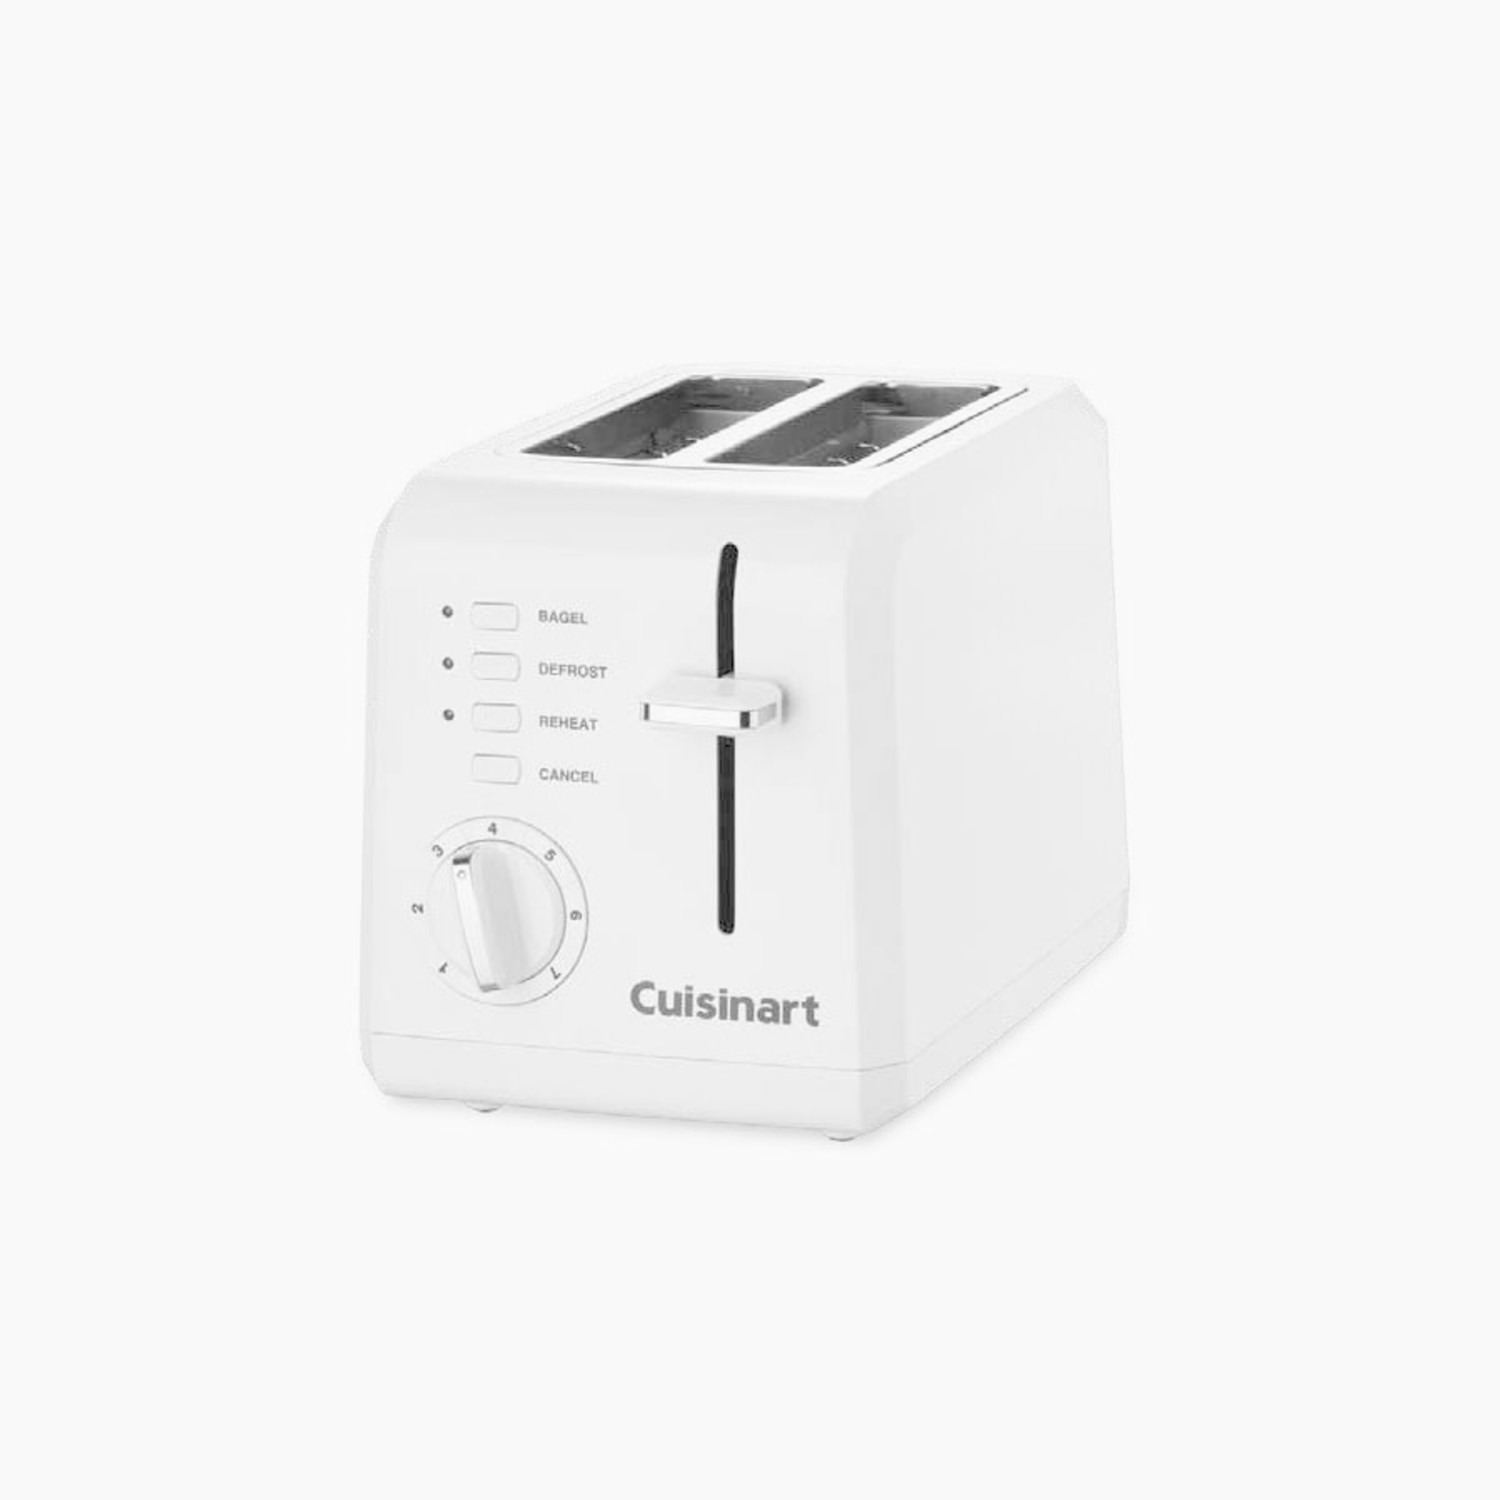 https://cdn.shoplightspeed.com/shops/633447/files/28502154/1500x4000x3/cuisinart-cuisinart-white-2-slice-toaster.jpg